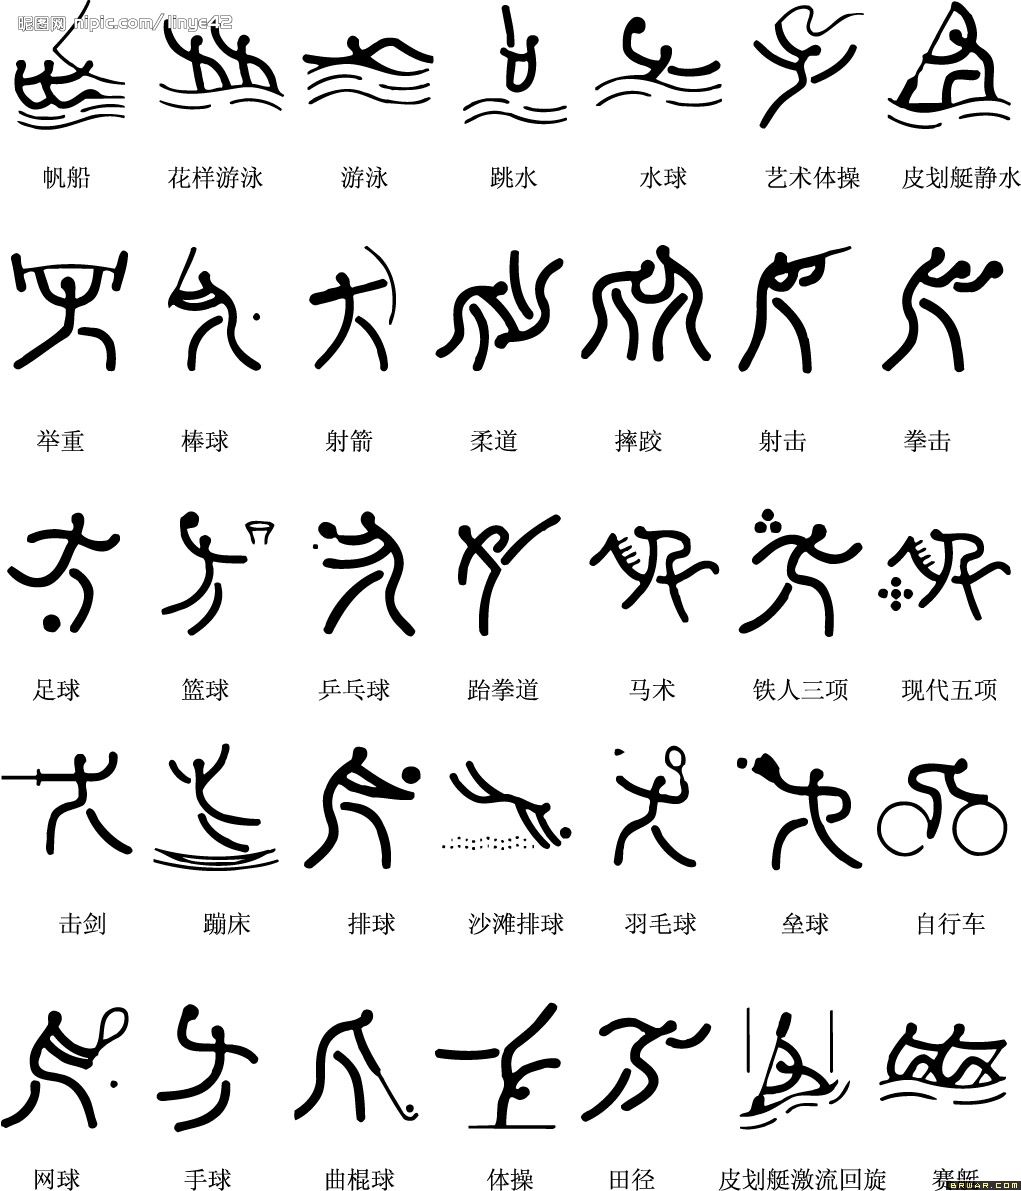 那些图标都代表哪项比赛项目呢，对奥运的图标你认识多少呢，现在我们正在热烈观看的是夏季奥运会，冬季奥运会你知道吗，08年奥运的时候也有人绘制了中国风的奥运比赛项目的标识，很萌很有意思。